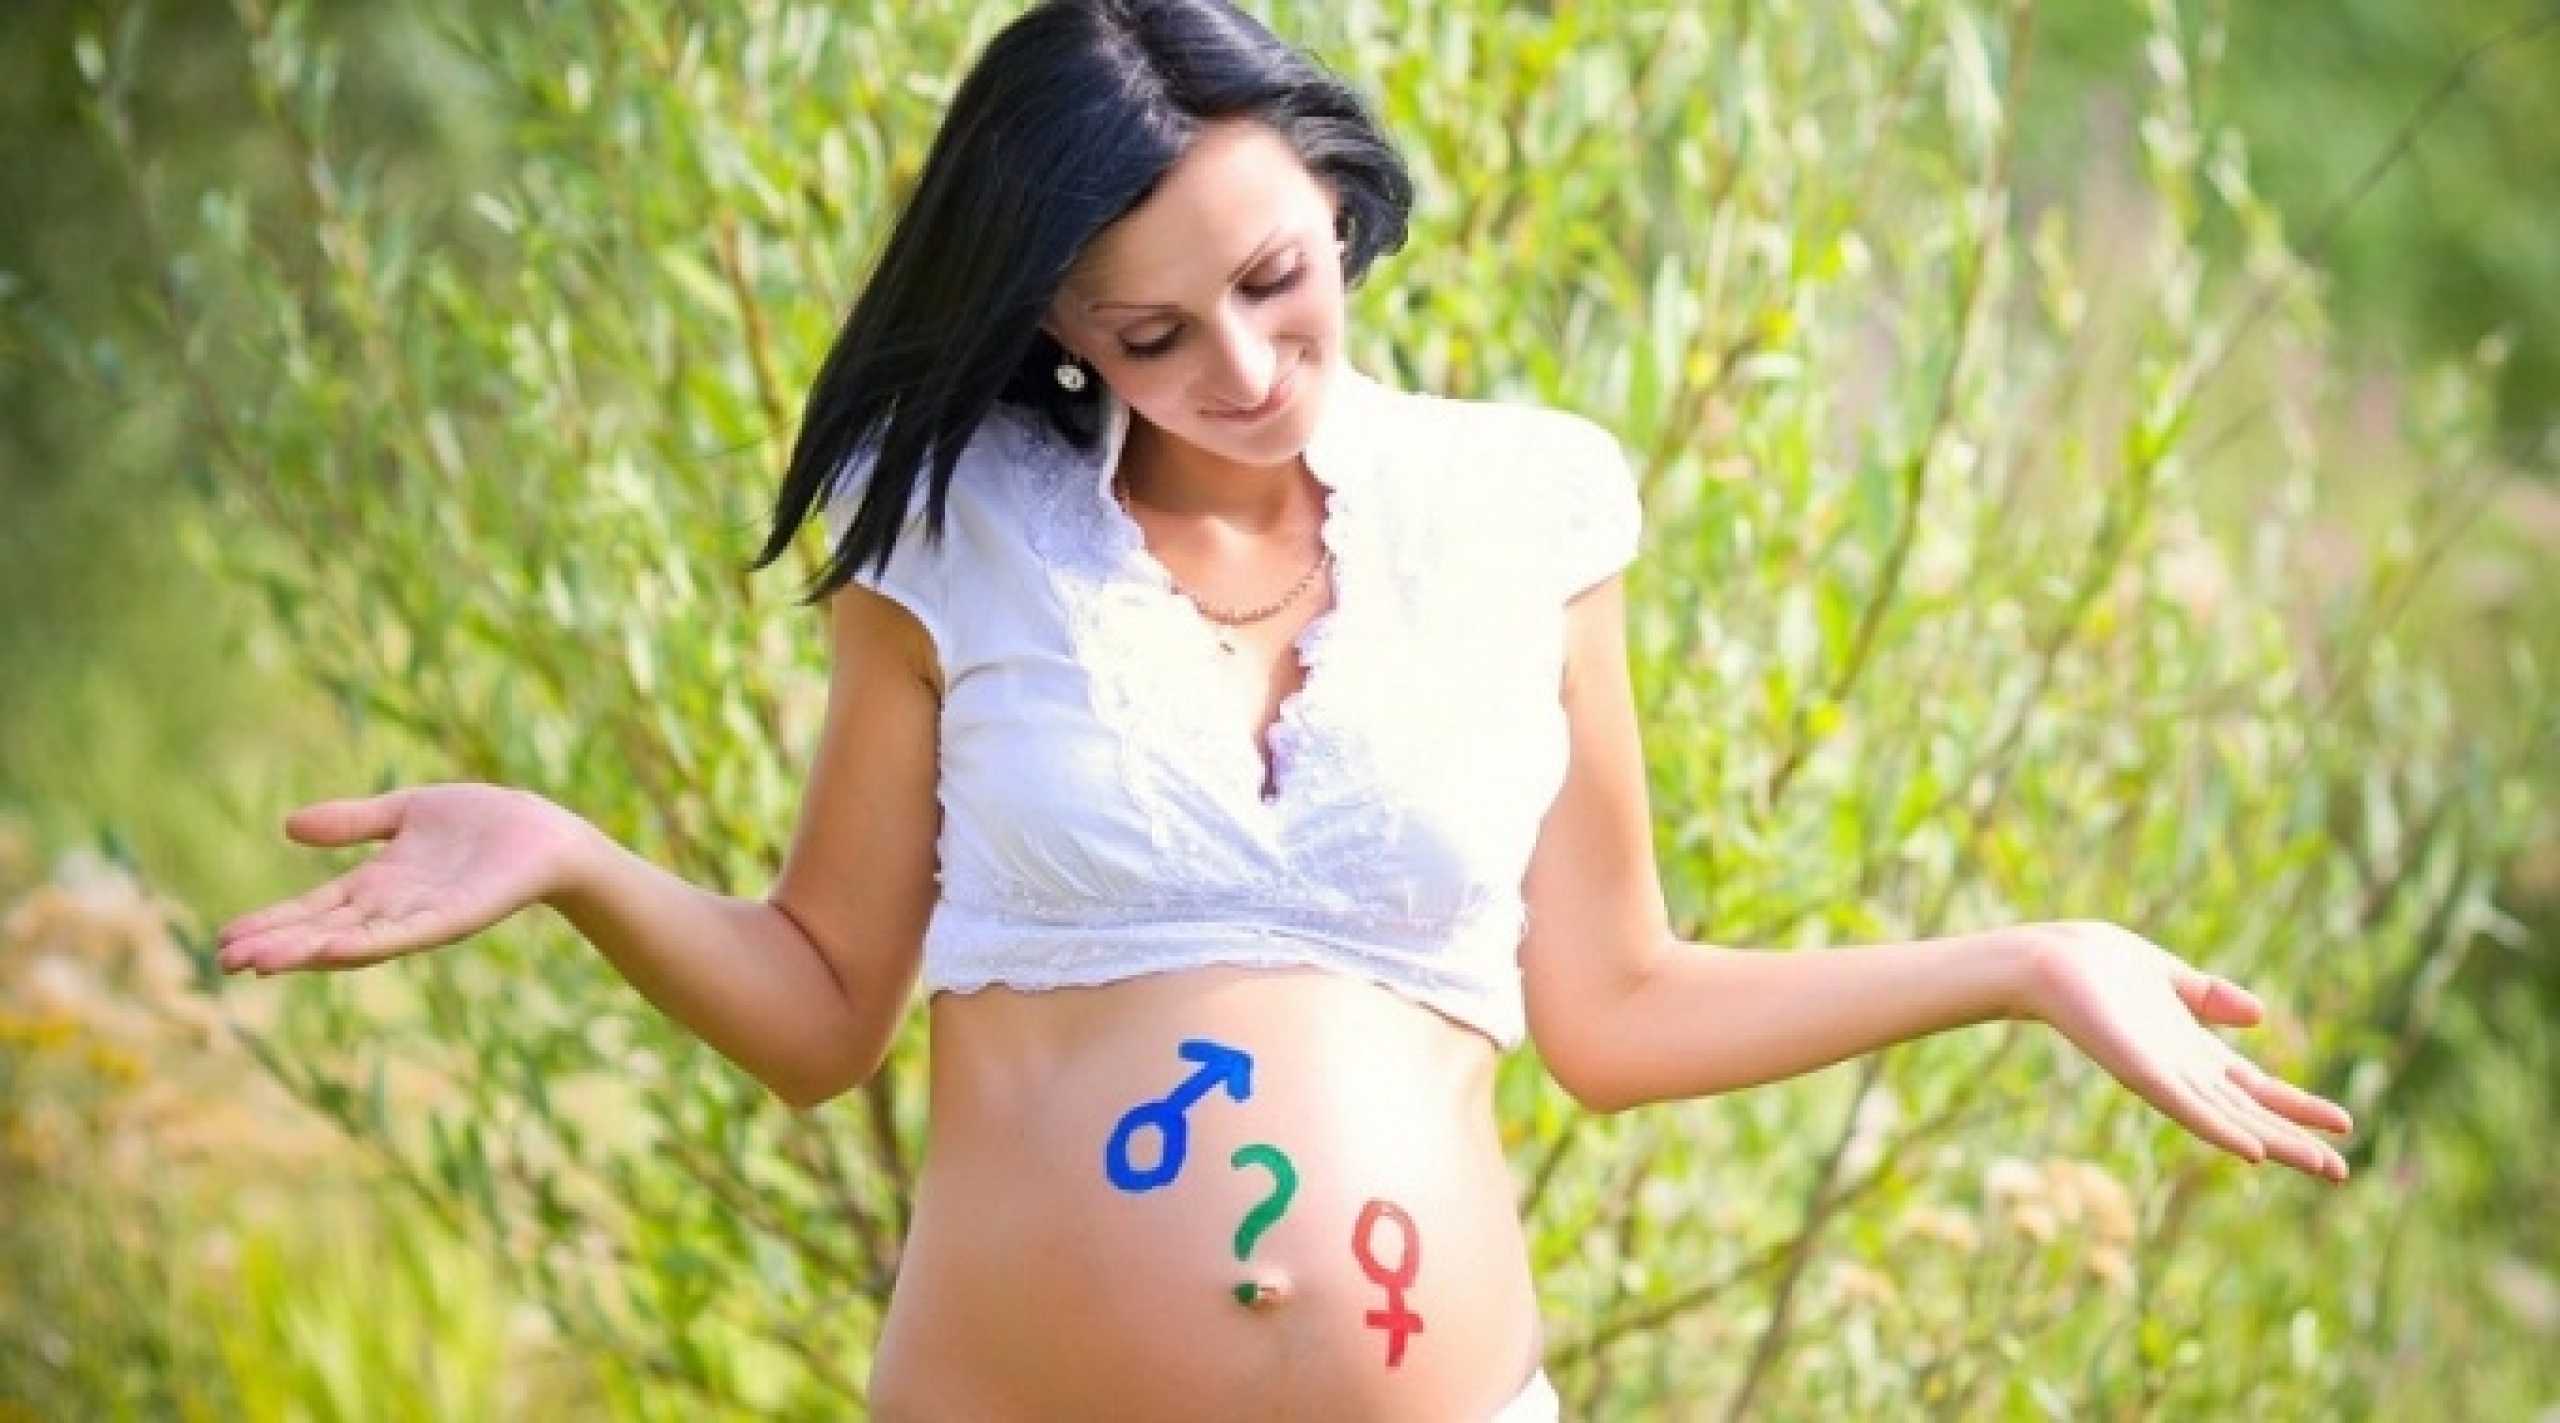 Как узнать пол ребенка без узи в домашних условиях на раннем сроке беременности?